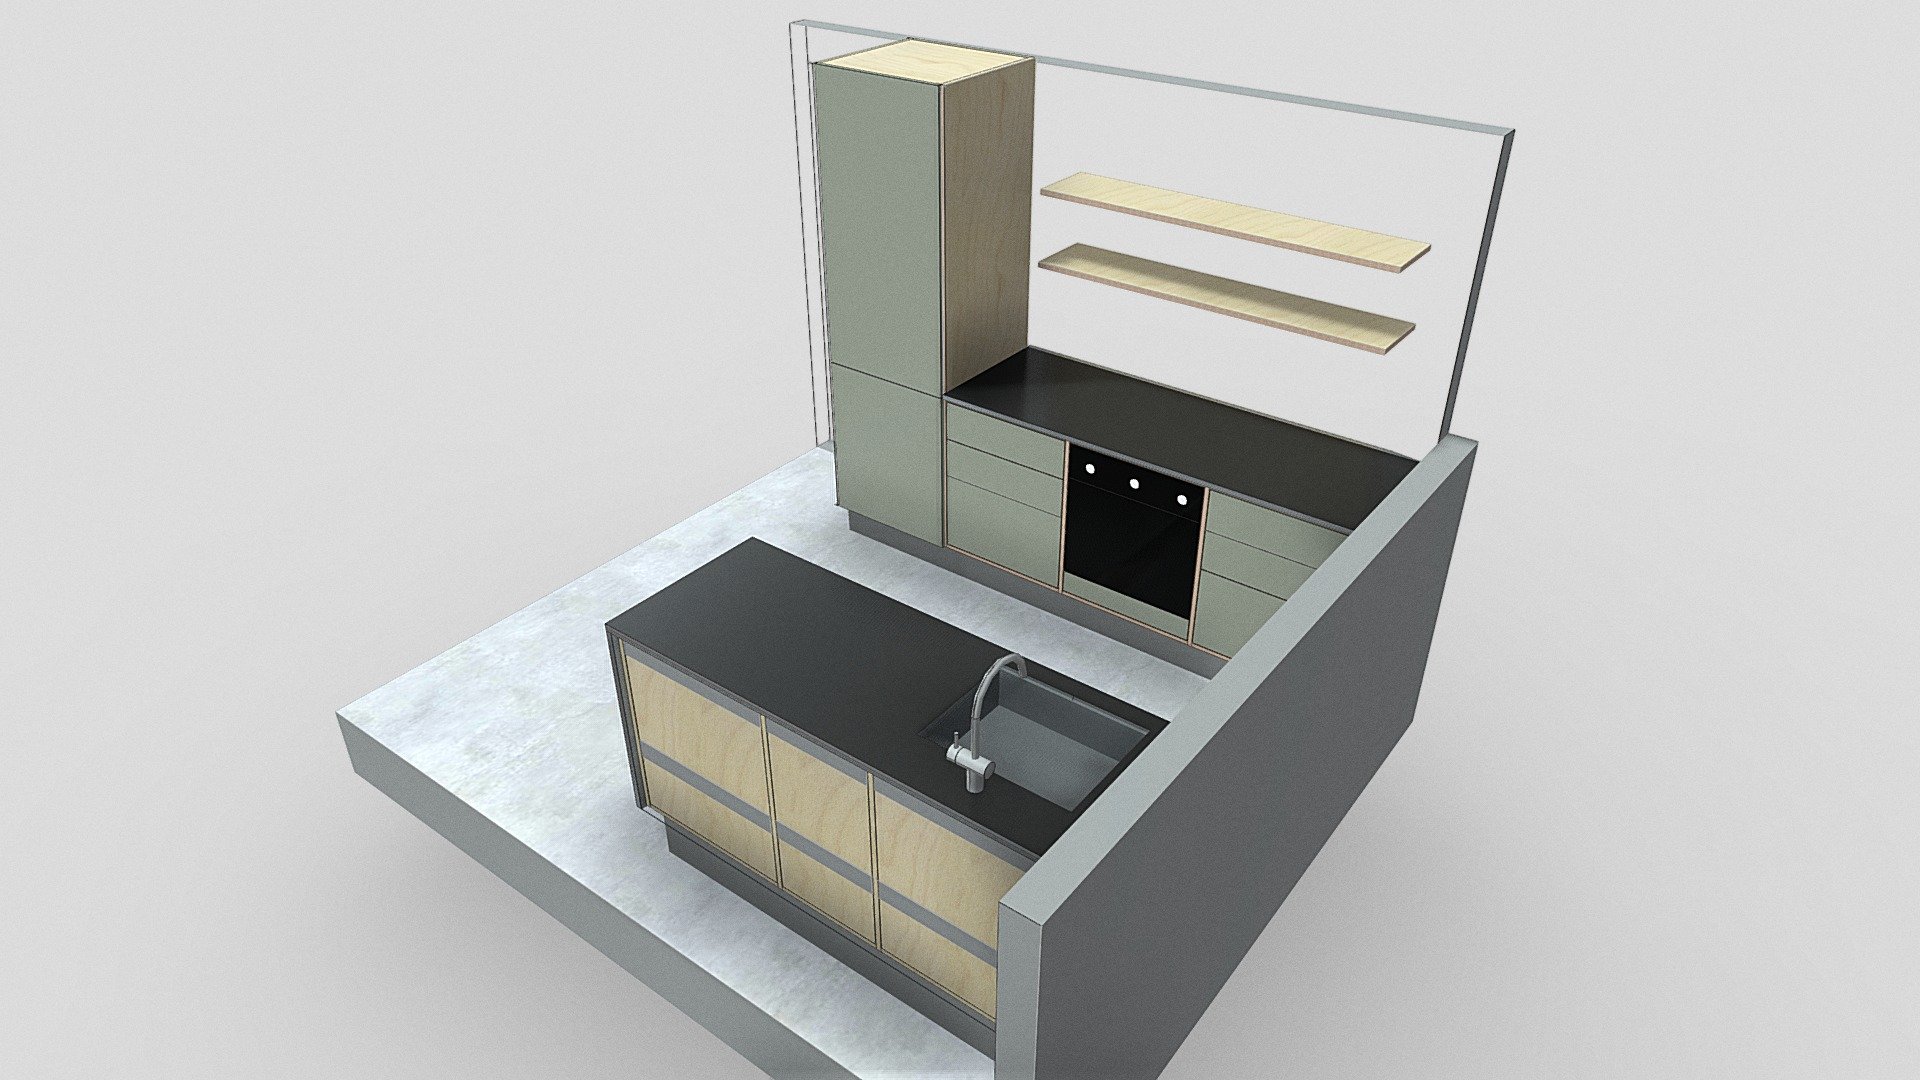 KLE_Office_kitchen_02 - 3D model by stykka.com 3d model